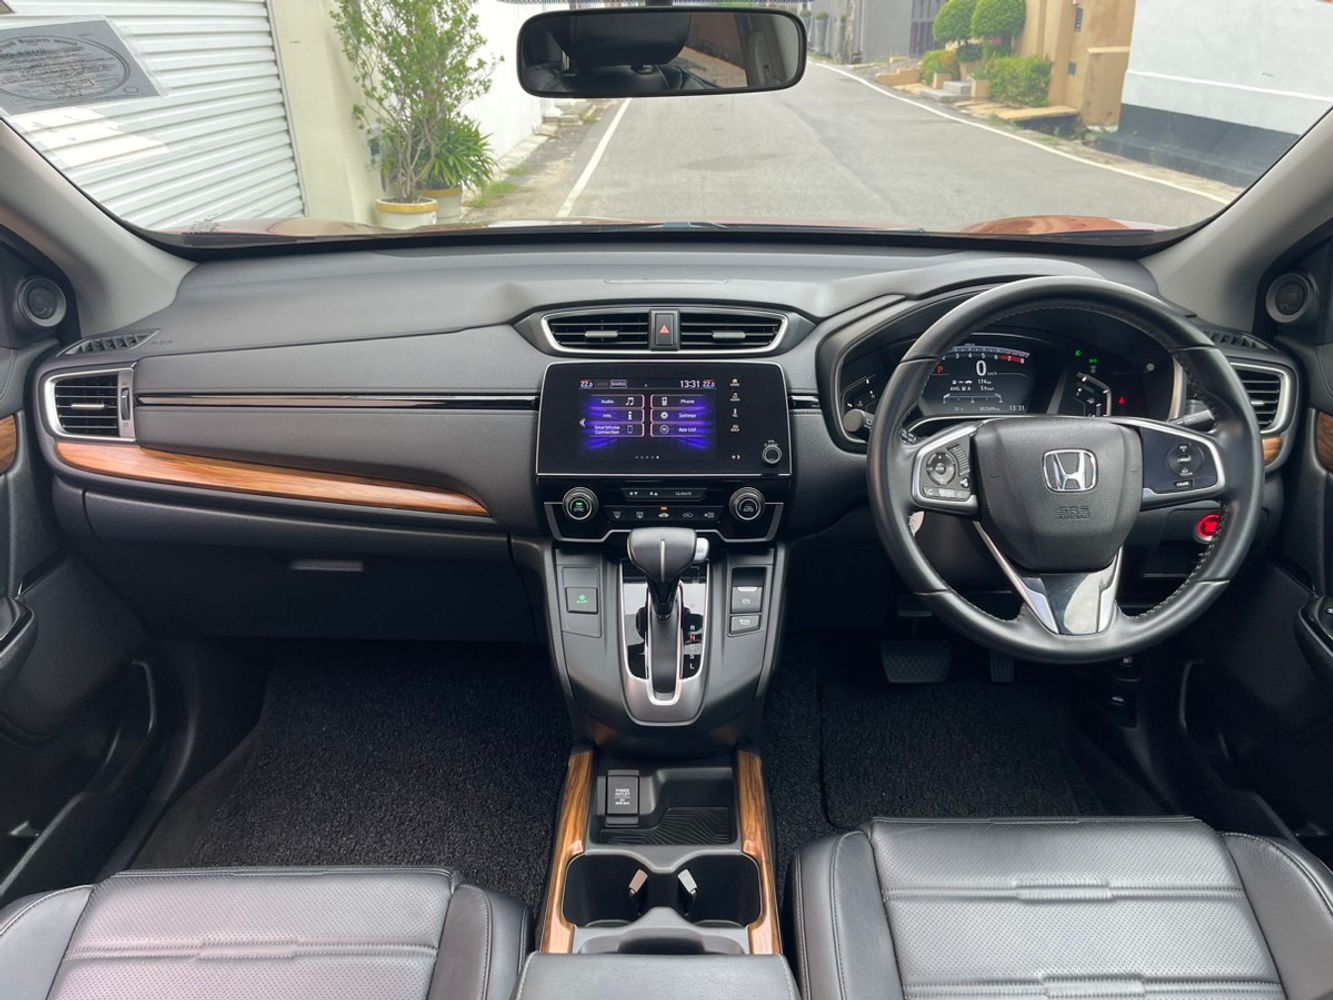 Honda CRV front interior